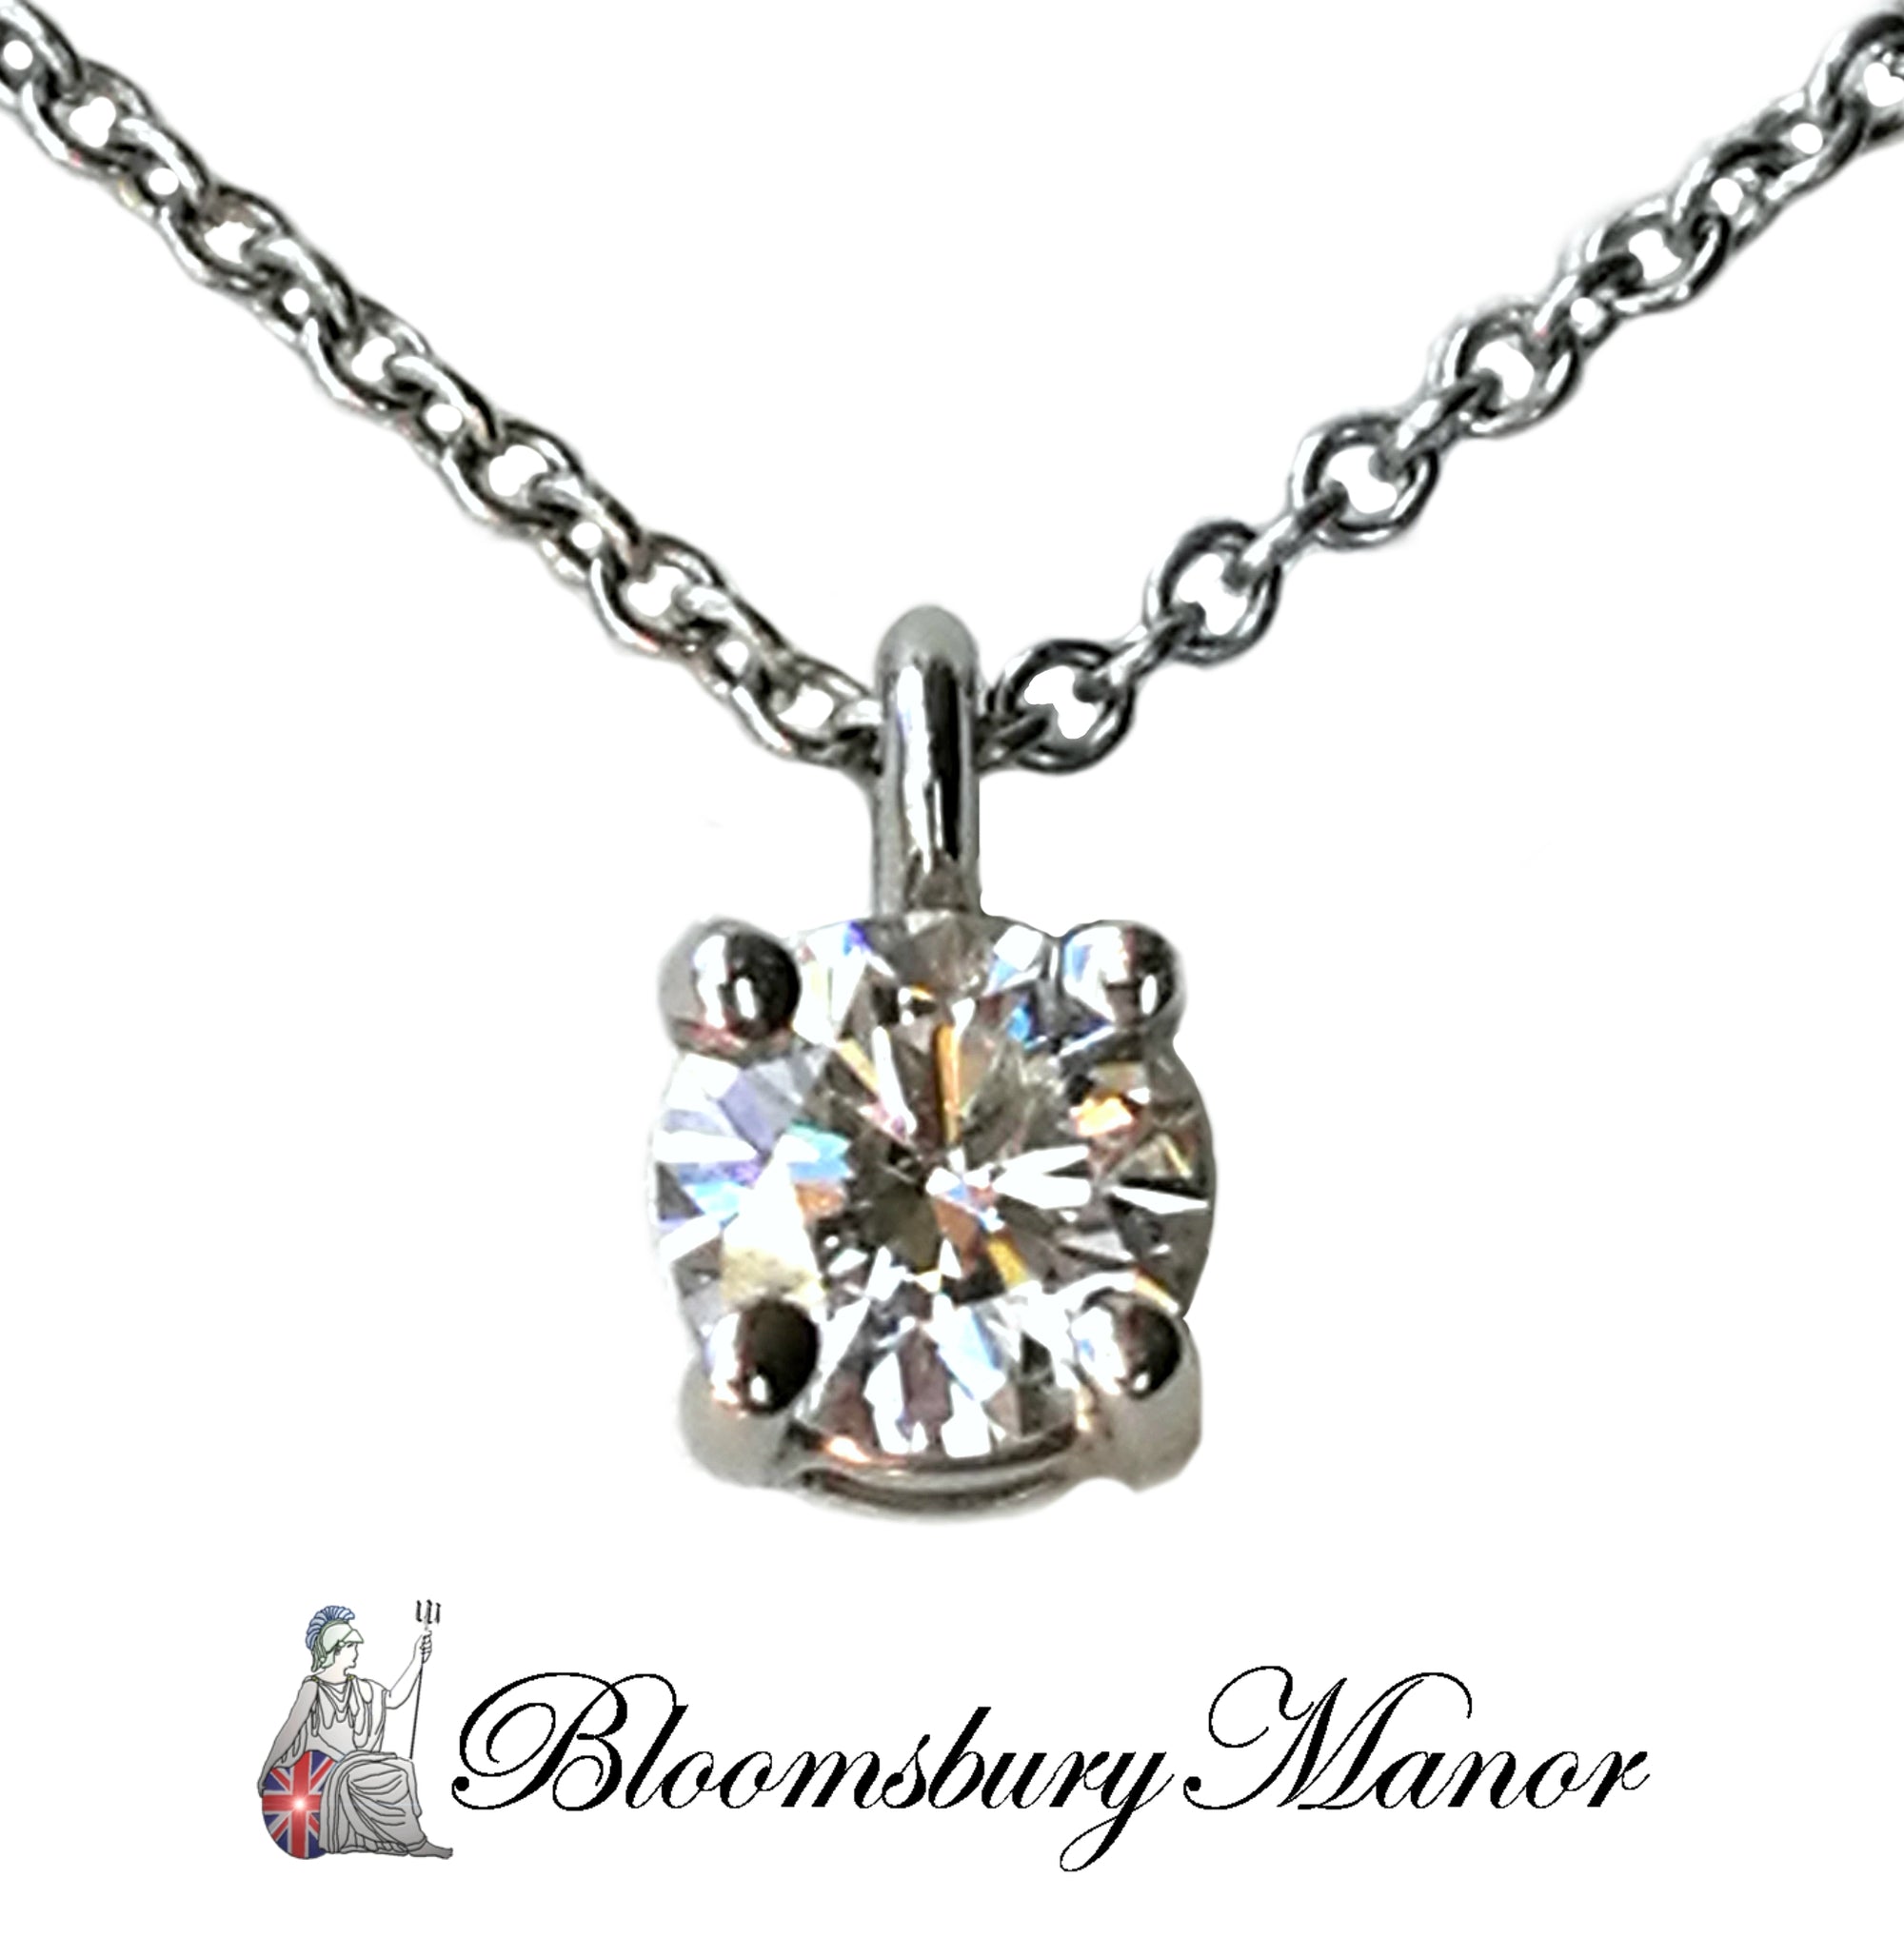 Tiffany & Co. 0.31ct H/VVS1 Round Brilliant Diamond Solitaire Pendant, 16 inch chain